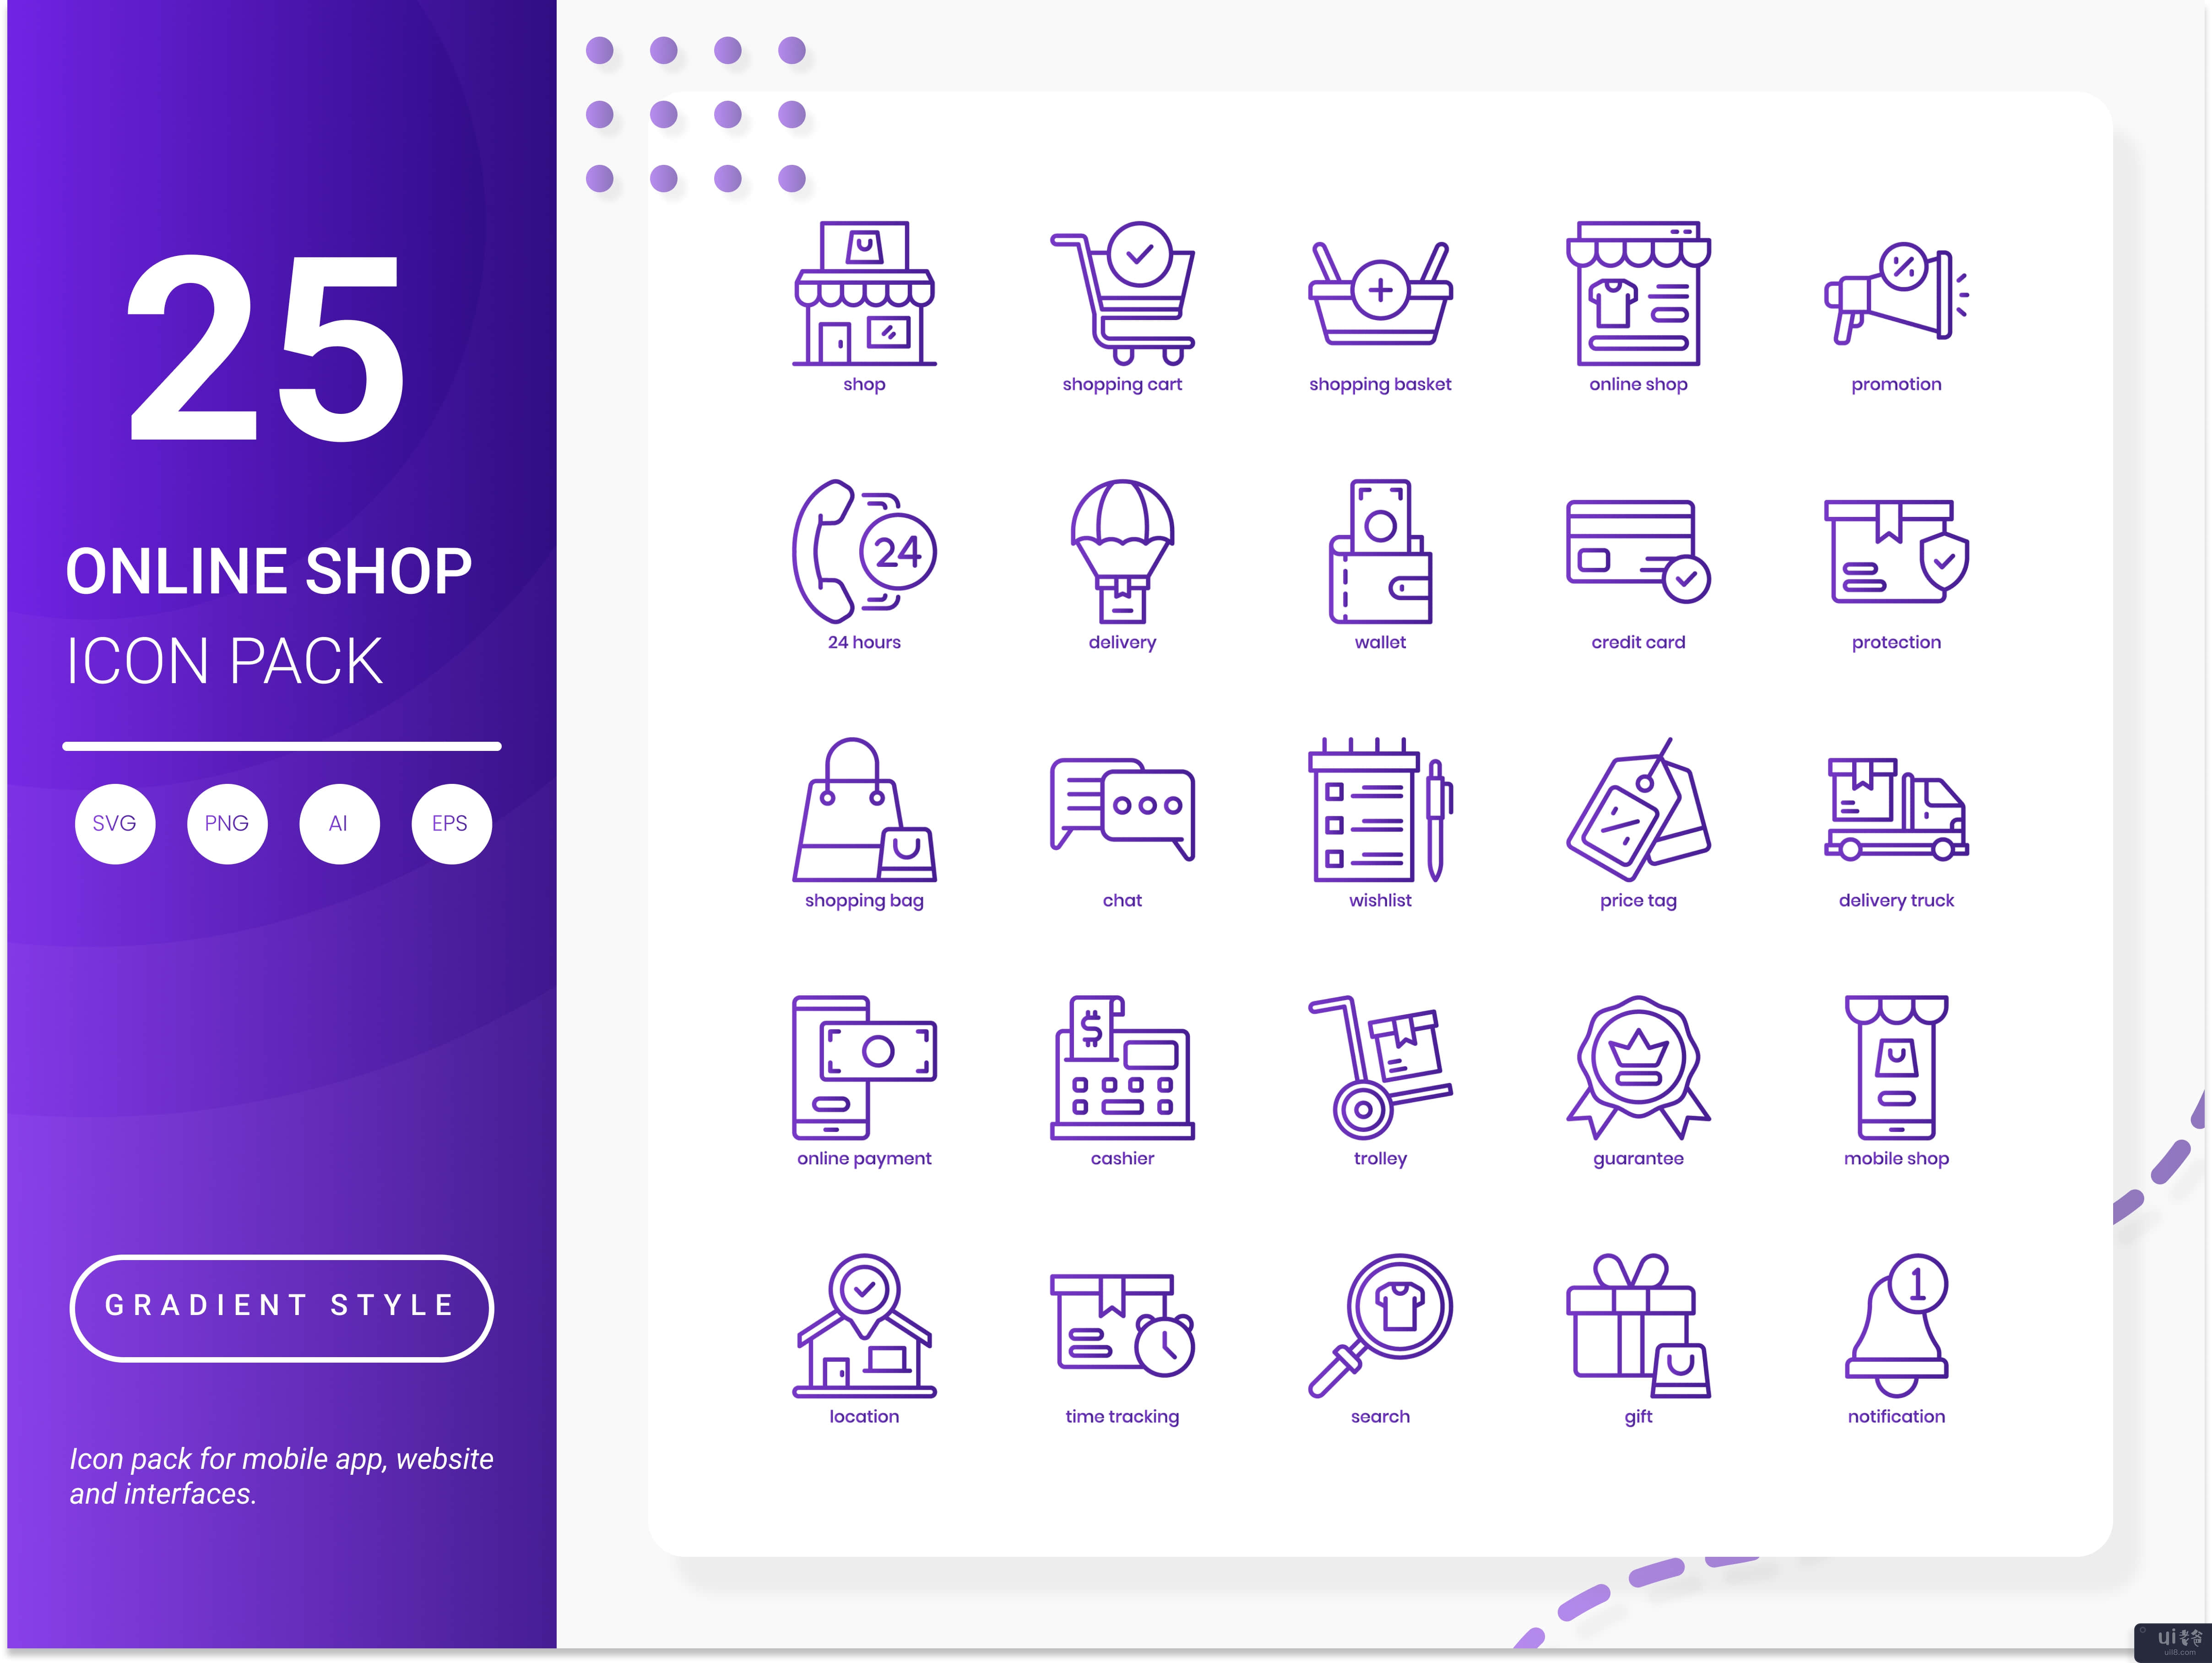 网上商店图标包(Online Shop Icon Pack)插图